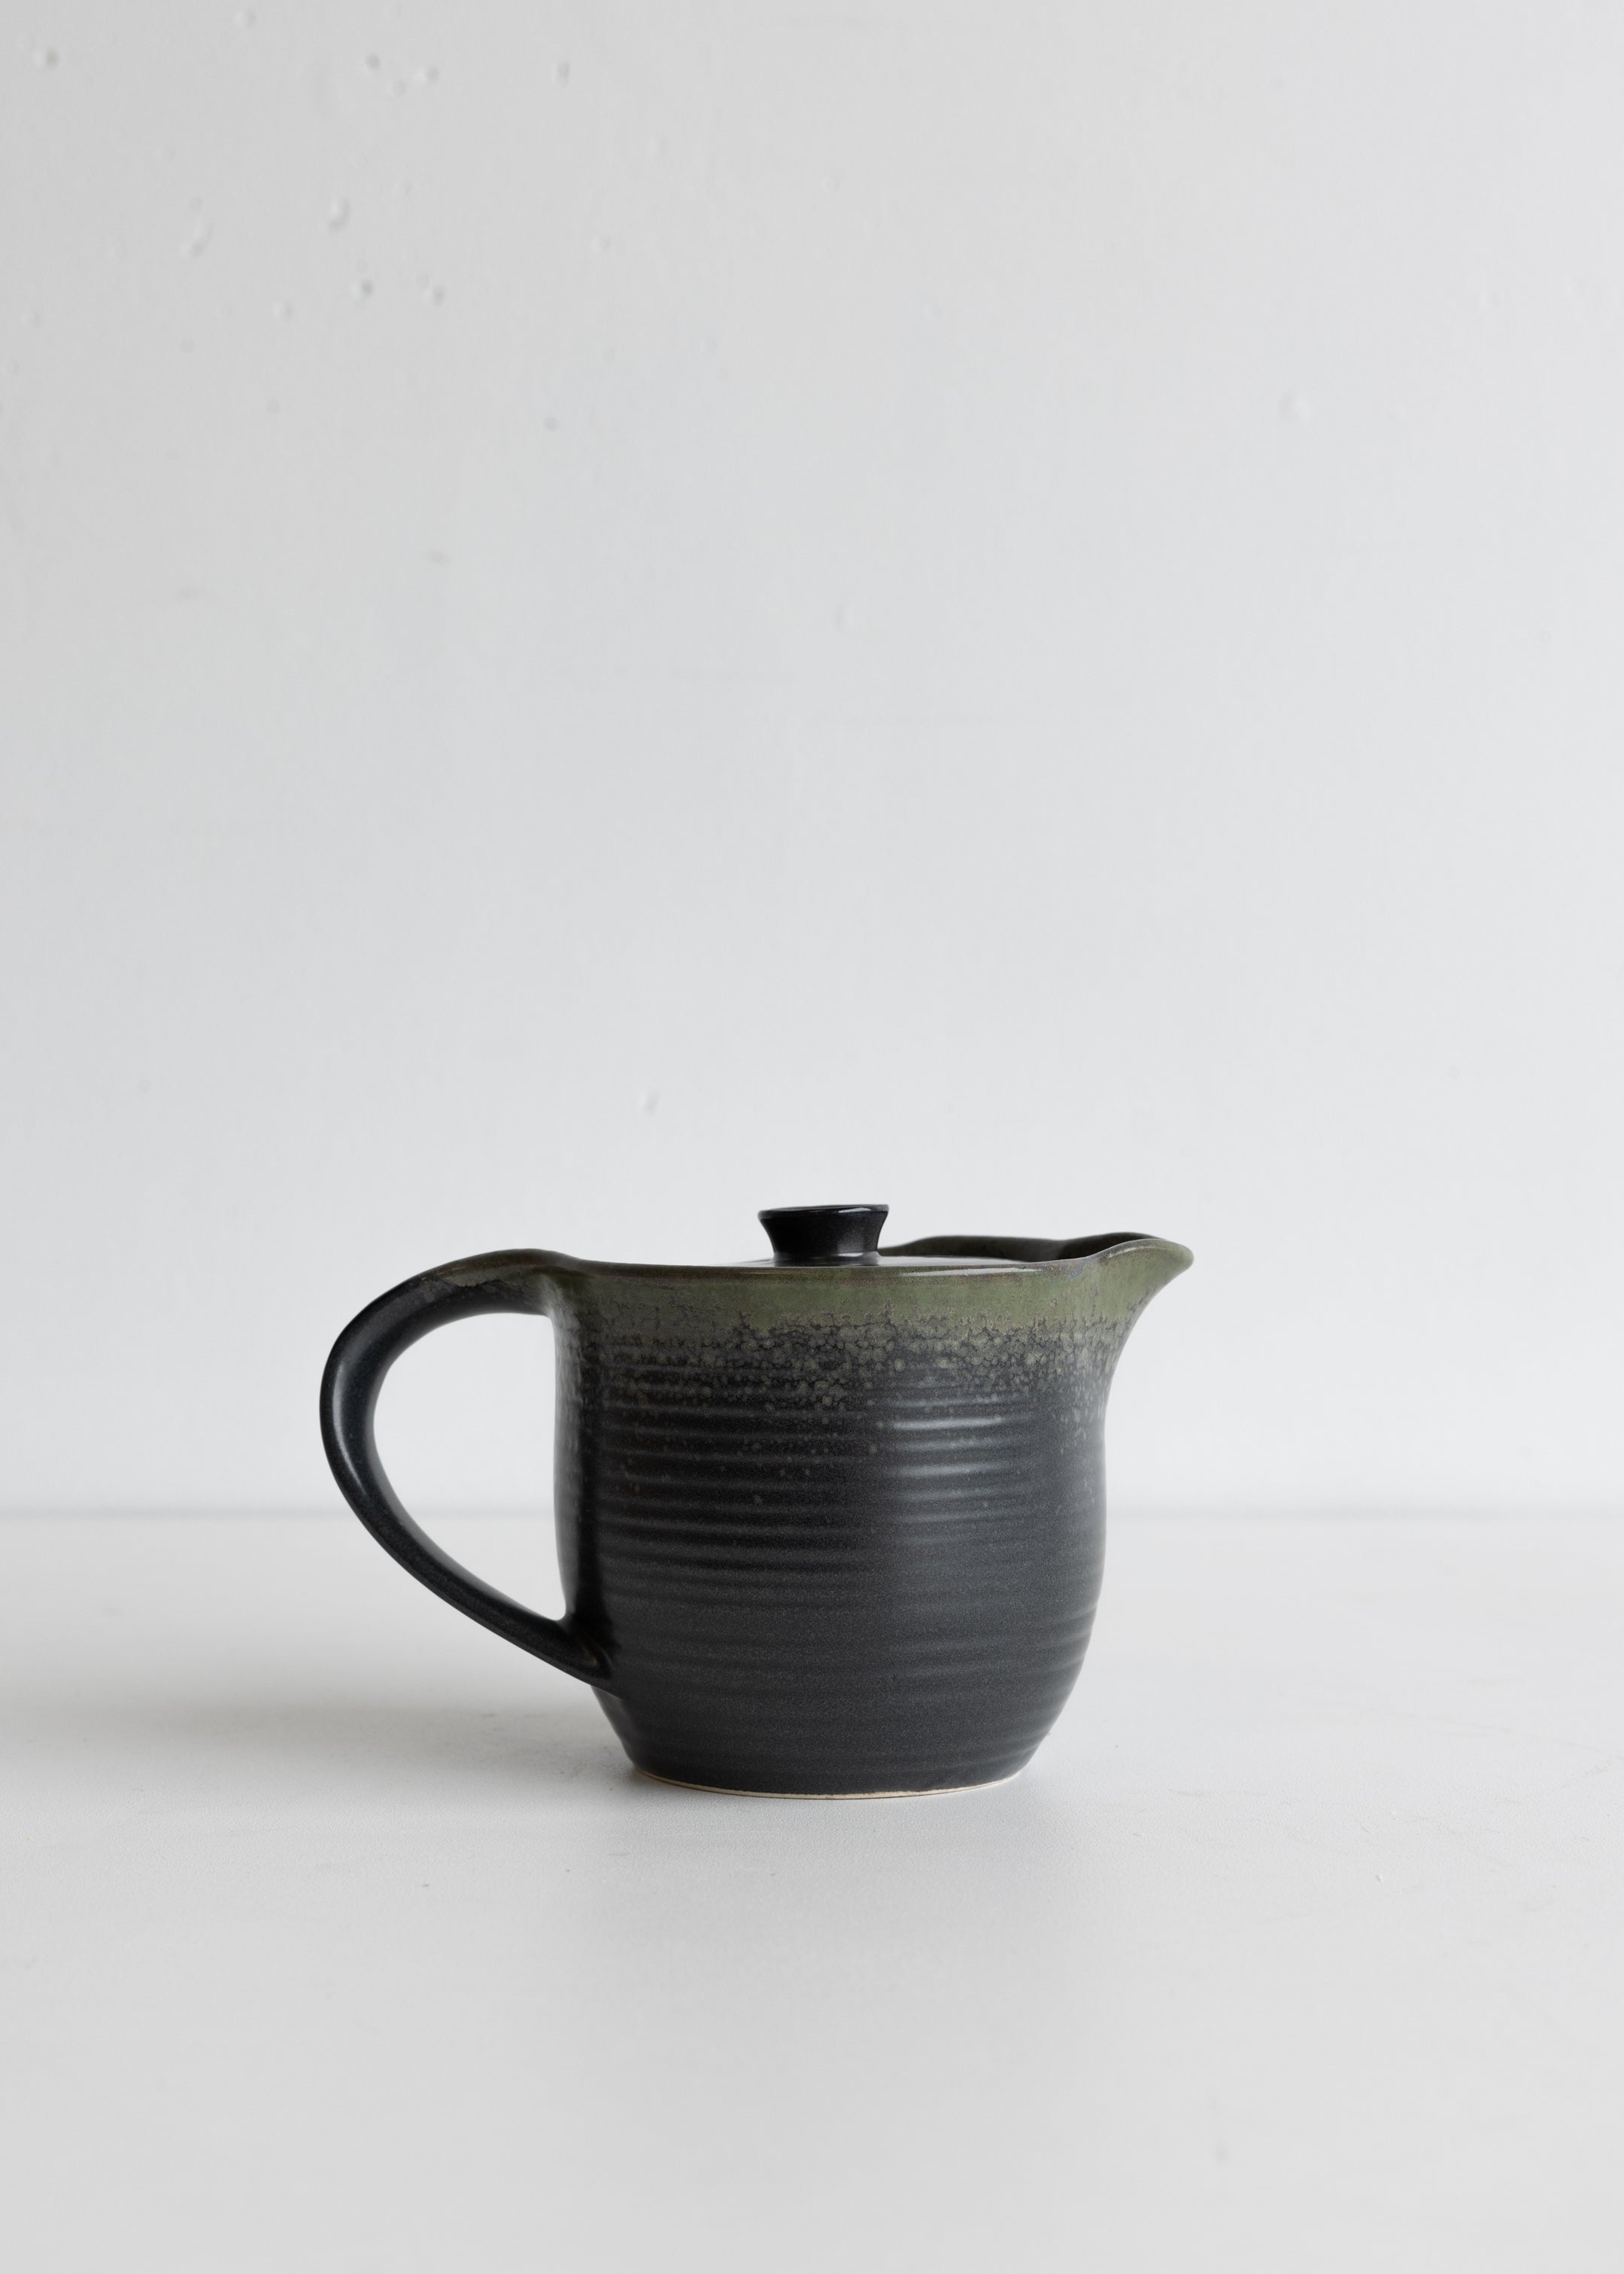 Glazed Stoneware Teapot